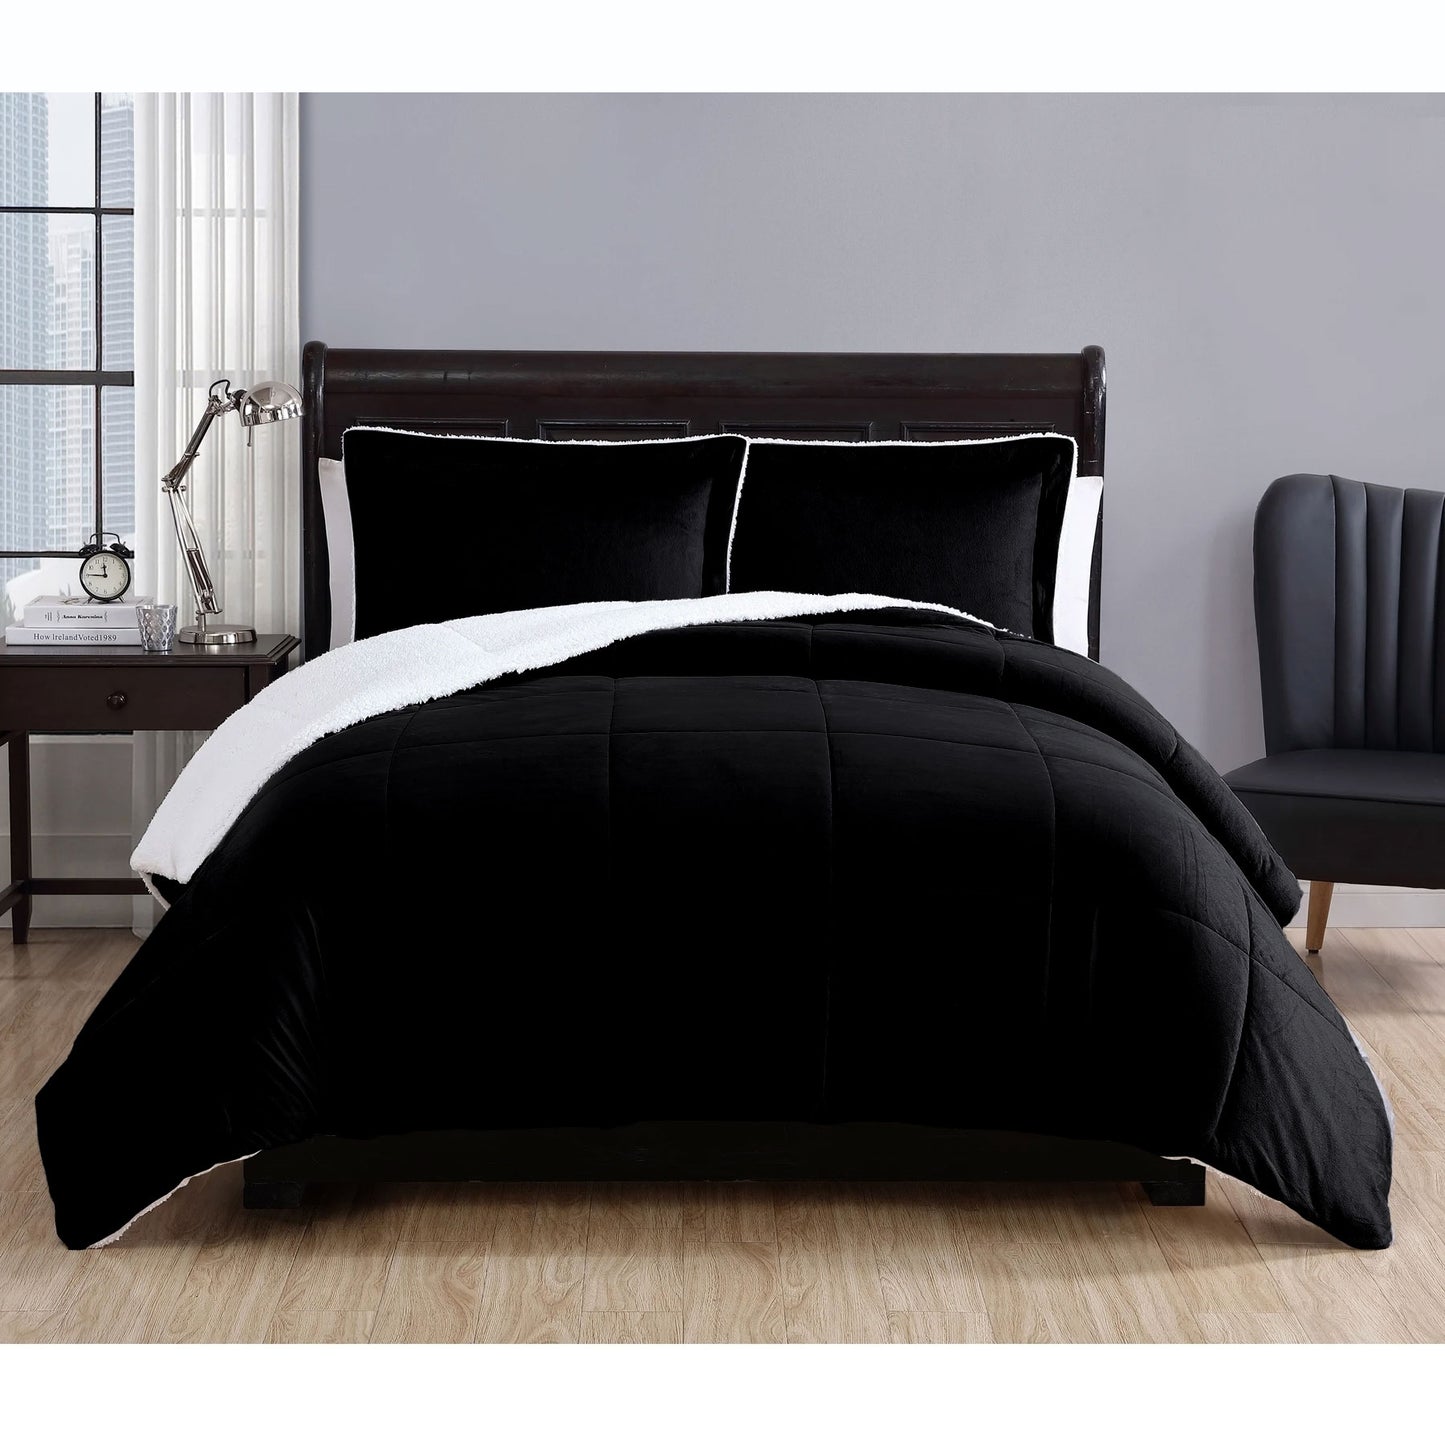 Queen 3 Piece Micro Mink Comforter Set - Black